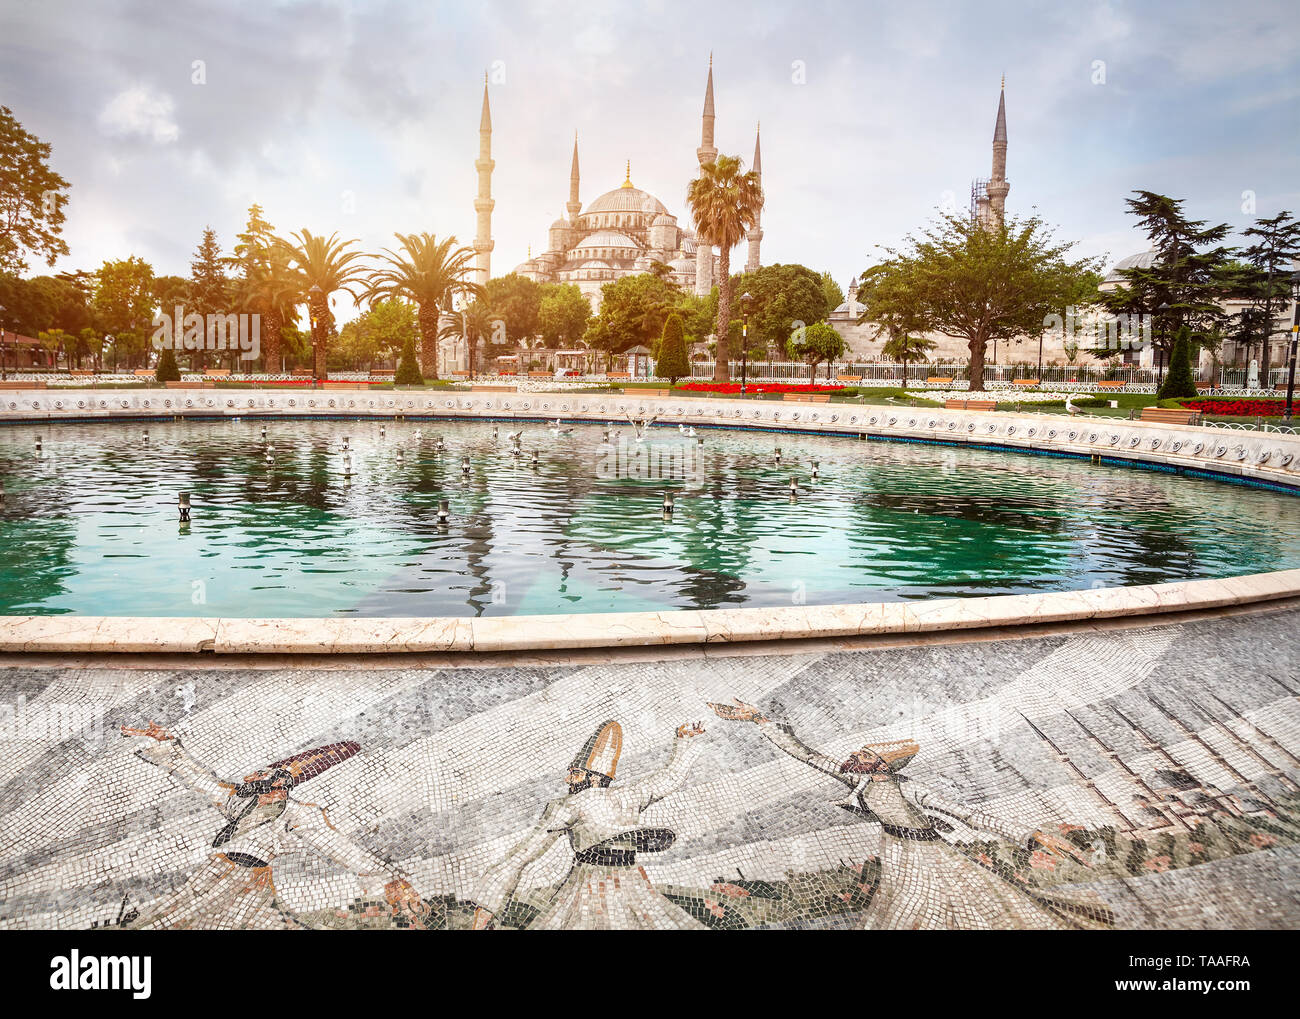 La mosquée bleue de Sultanahmet près de la fontaine, Istanbul, Turquie Banque D'Images